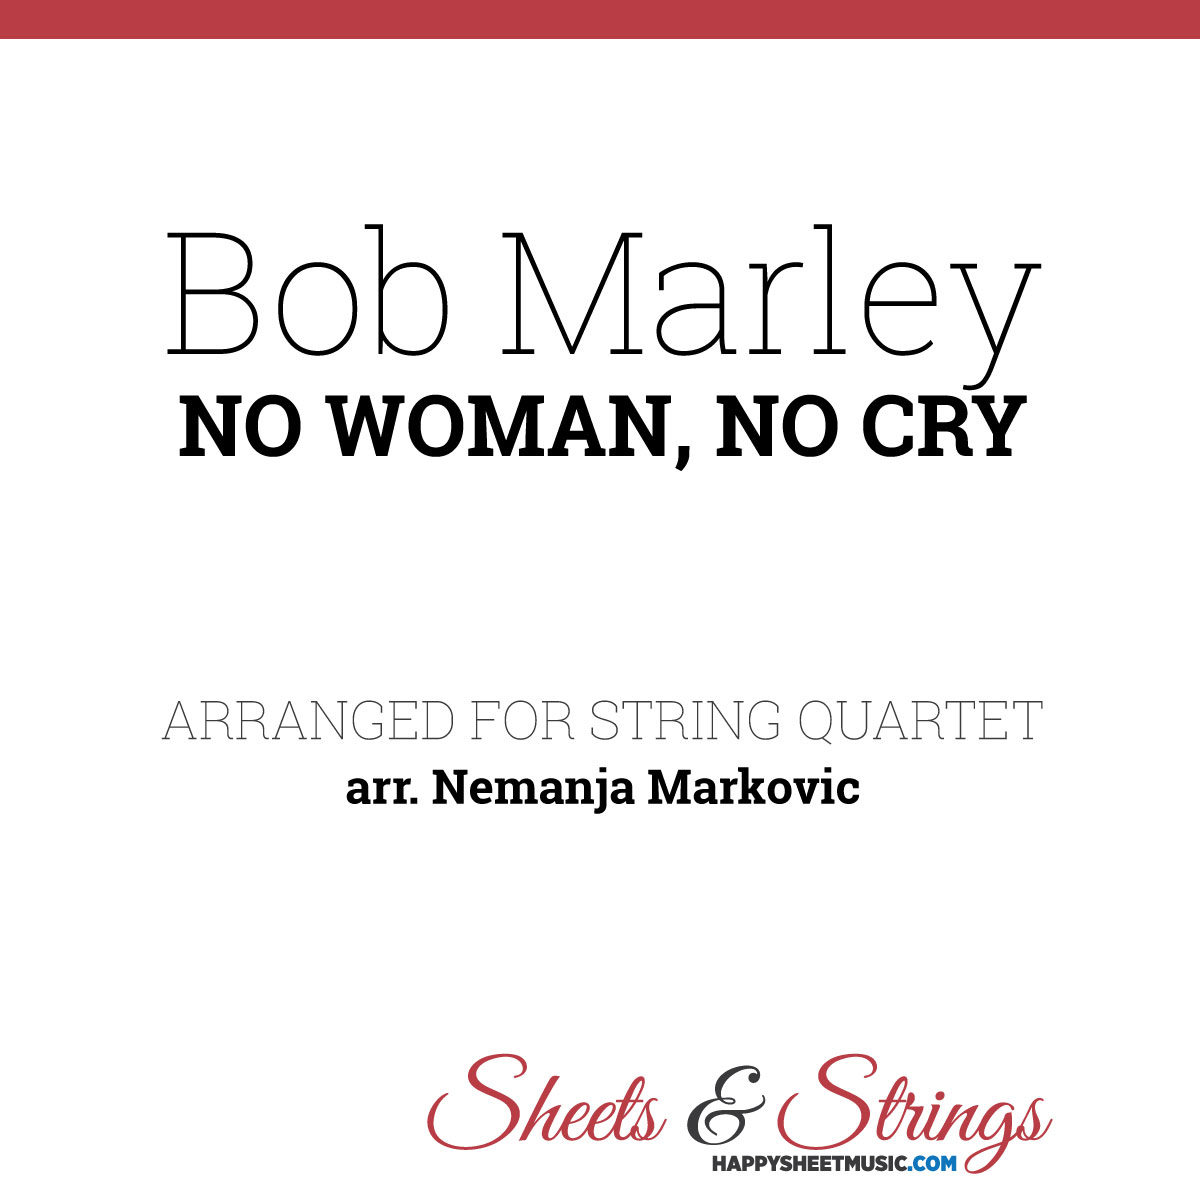 Bob Marley - No Woman, No Cry - Sheet Music for String Quartet - Music Arrangement for String Quartet